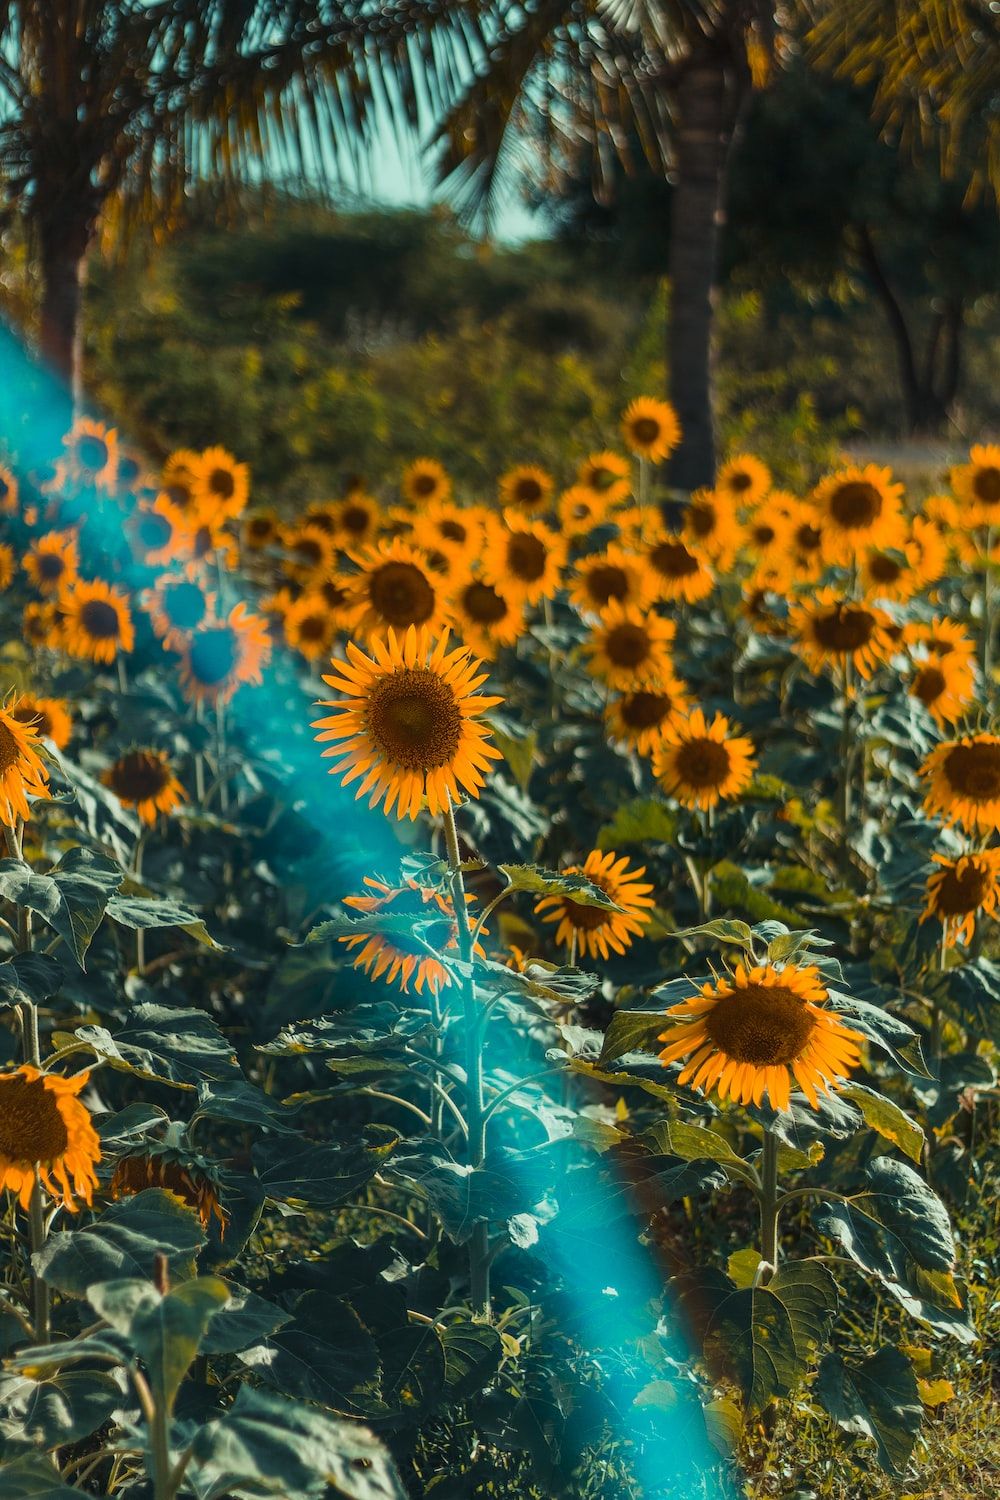  Regenbogen Hintergrundbild 1000x1500. Foto zum Thema Ein sonnenblumenfeld mit einem regenbogen im hintergrund